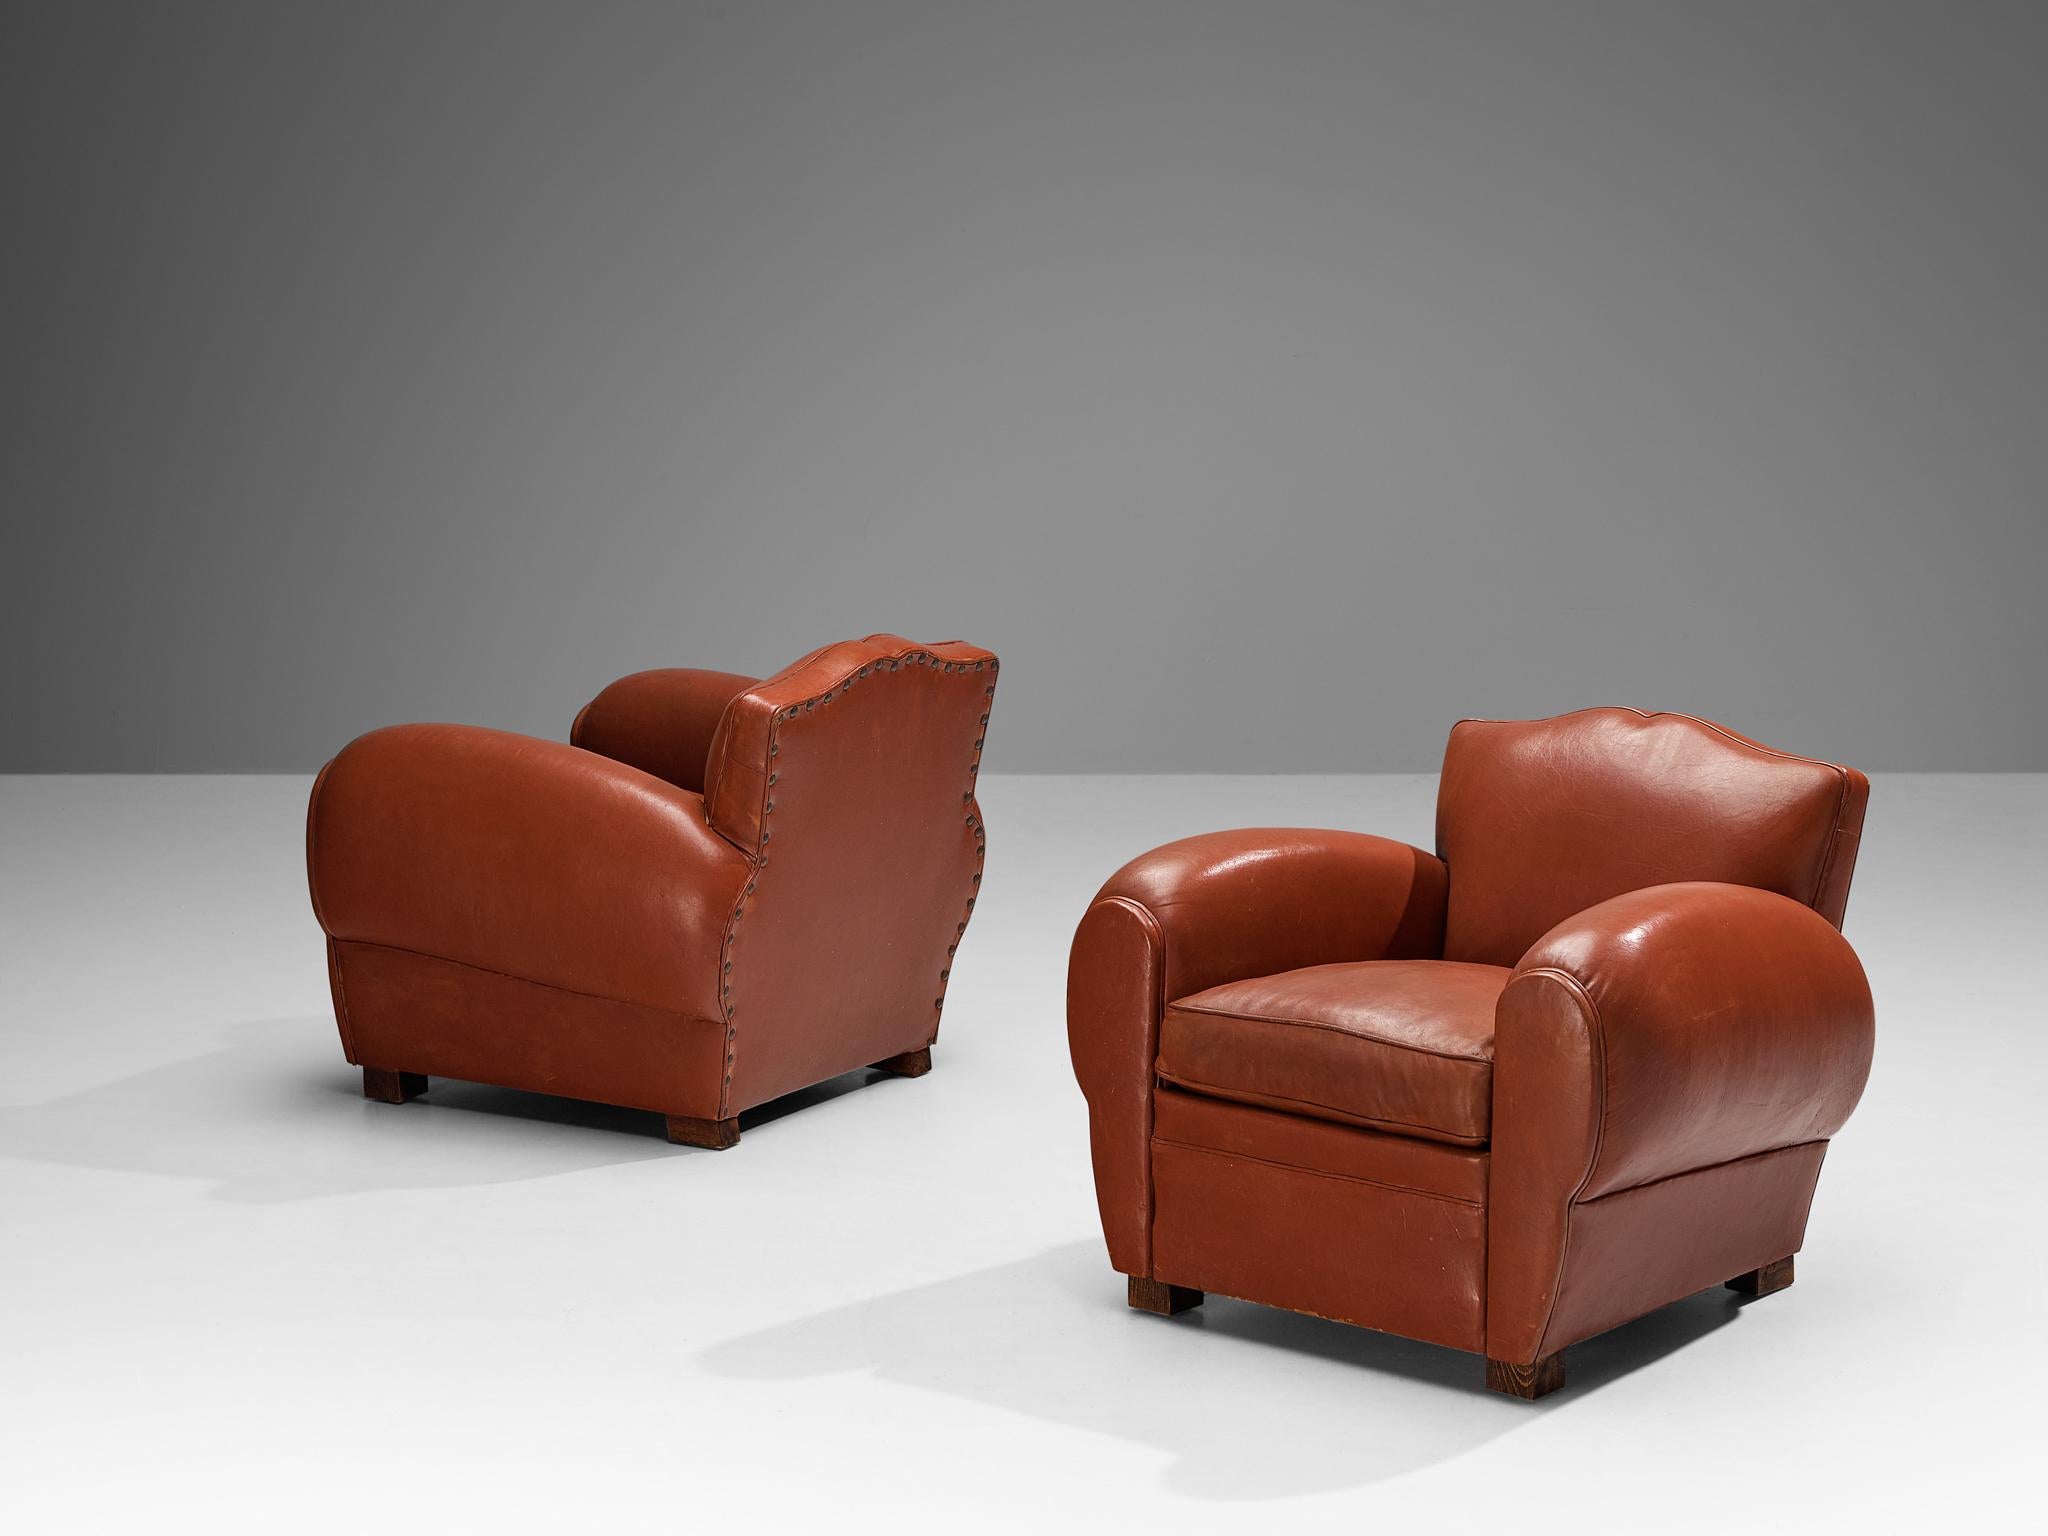 Maurice Rinck, paire de chaises longues, cuir brun rougeâtre, hêtre, France, années 1940

Grand et confortable ensemble de deux fauteuils club en cuir. Des chaises vraiment extraordinaires et luxueuses qui se caractérisent par une assise profonde et